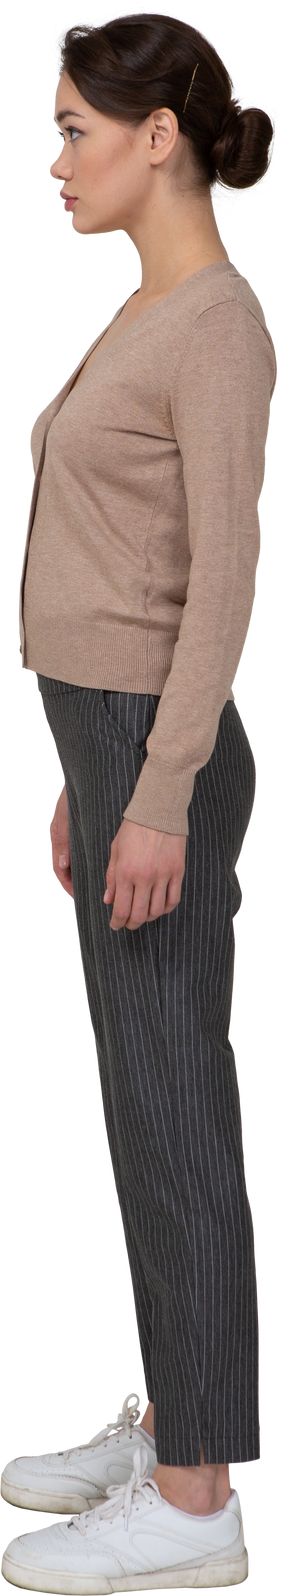 Vista lateral de uma jovem parada em um pulôver e calça olhando para o lado